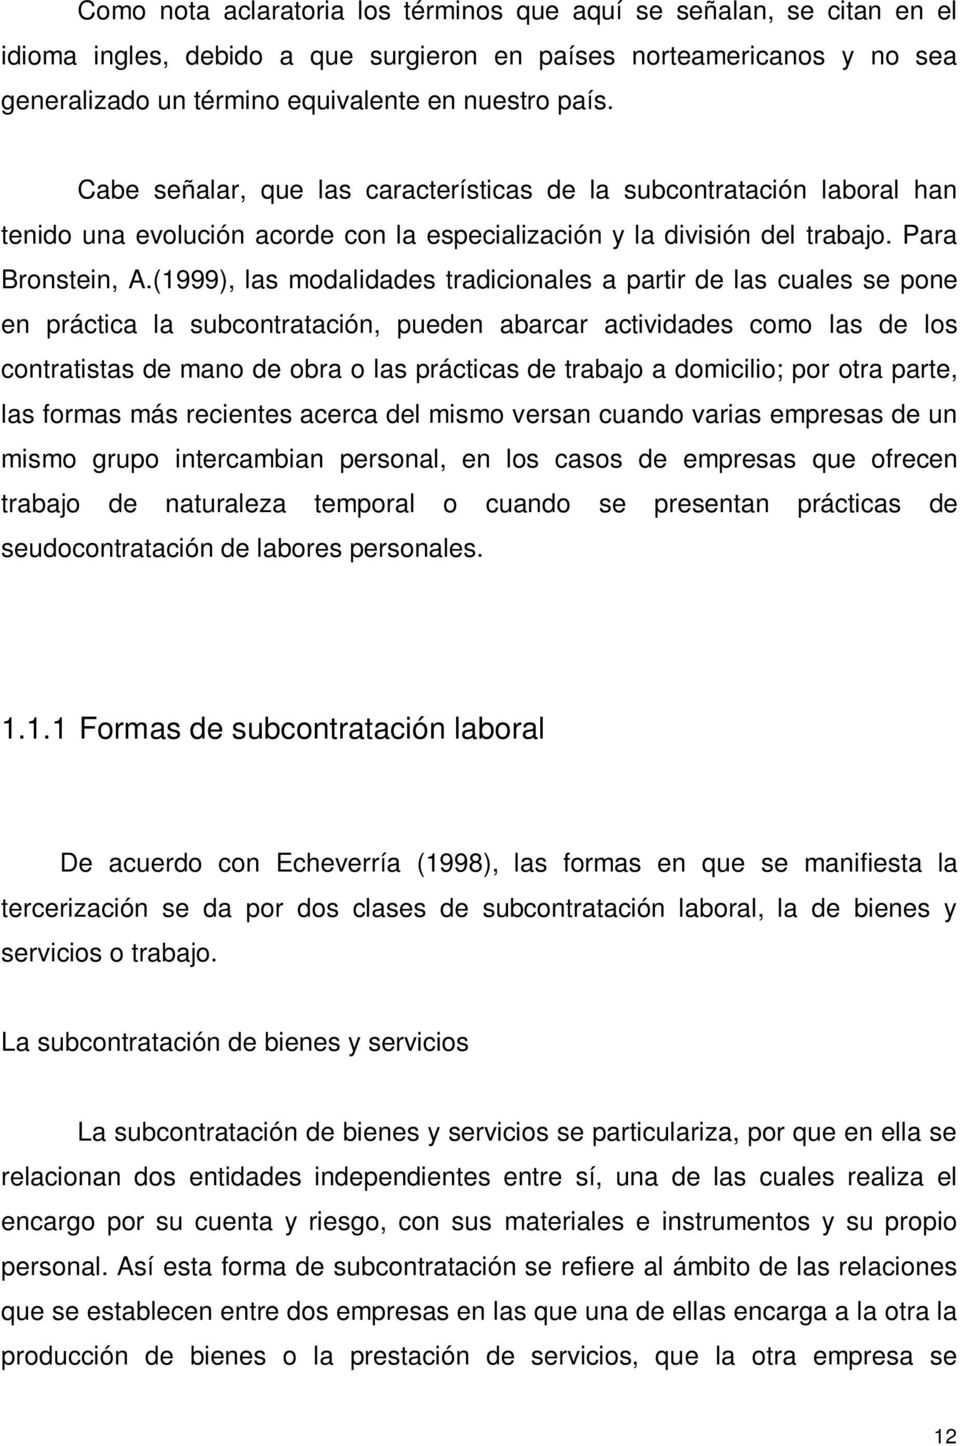 (1999), las modalidades tradicionales a partir de las cuales se pone en práctica la subcontratación, pueden abarcar actividades como las de los contratistas de mano de obra o las prácticas de trabajo